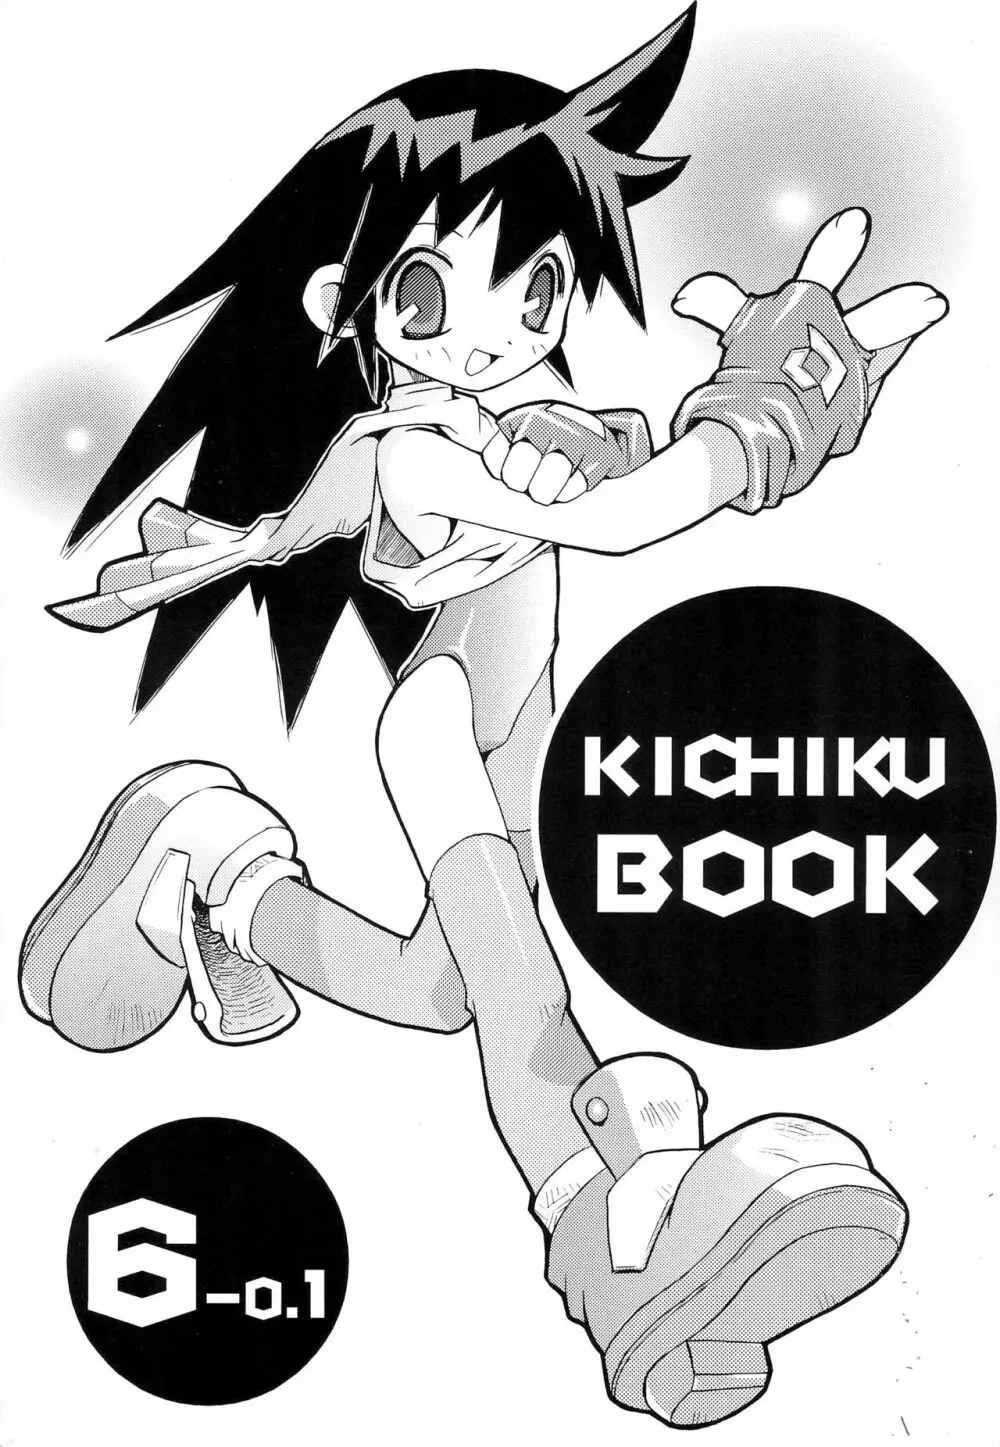 KICHIKU BOOK 6-0.1